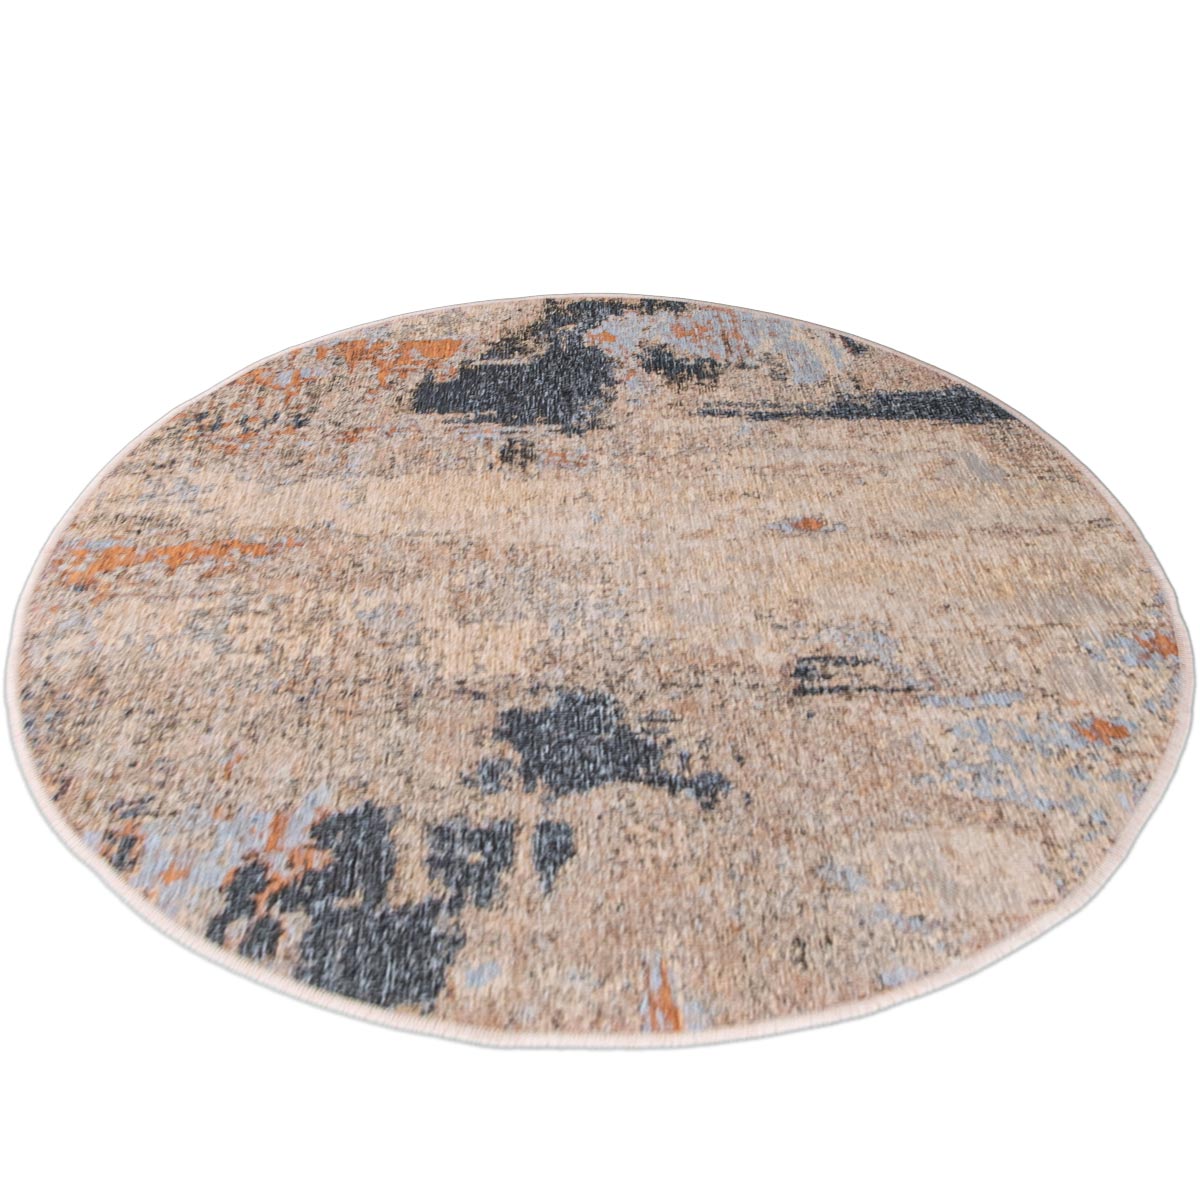 שטיח מרסיי 39 אפור/כתום/כחול עגול | השטיח האדום